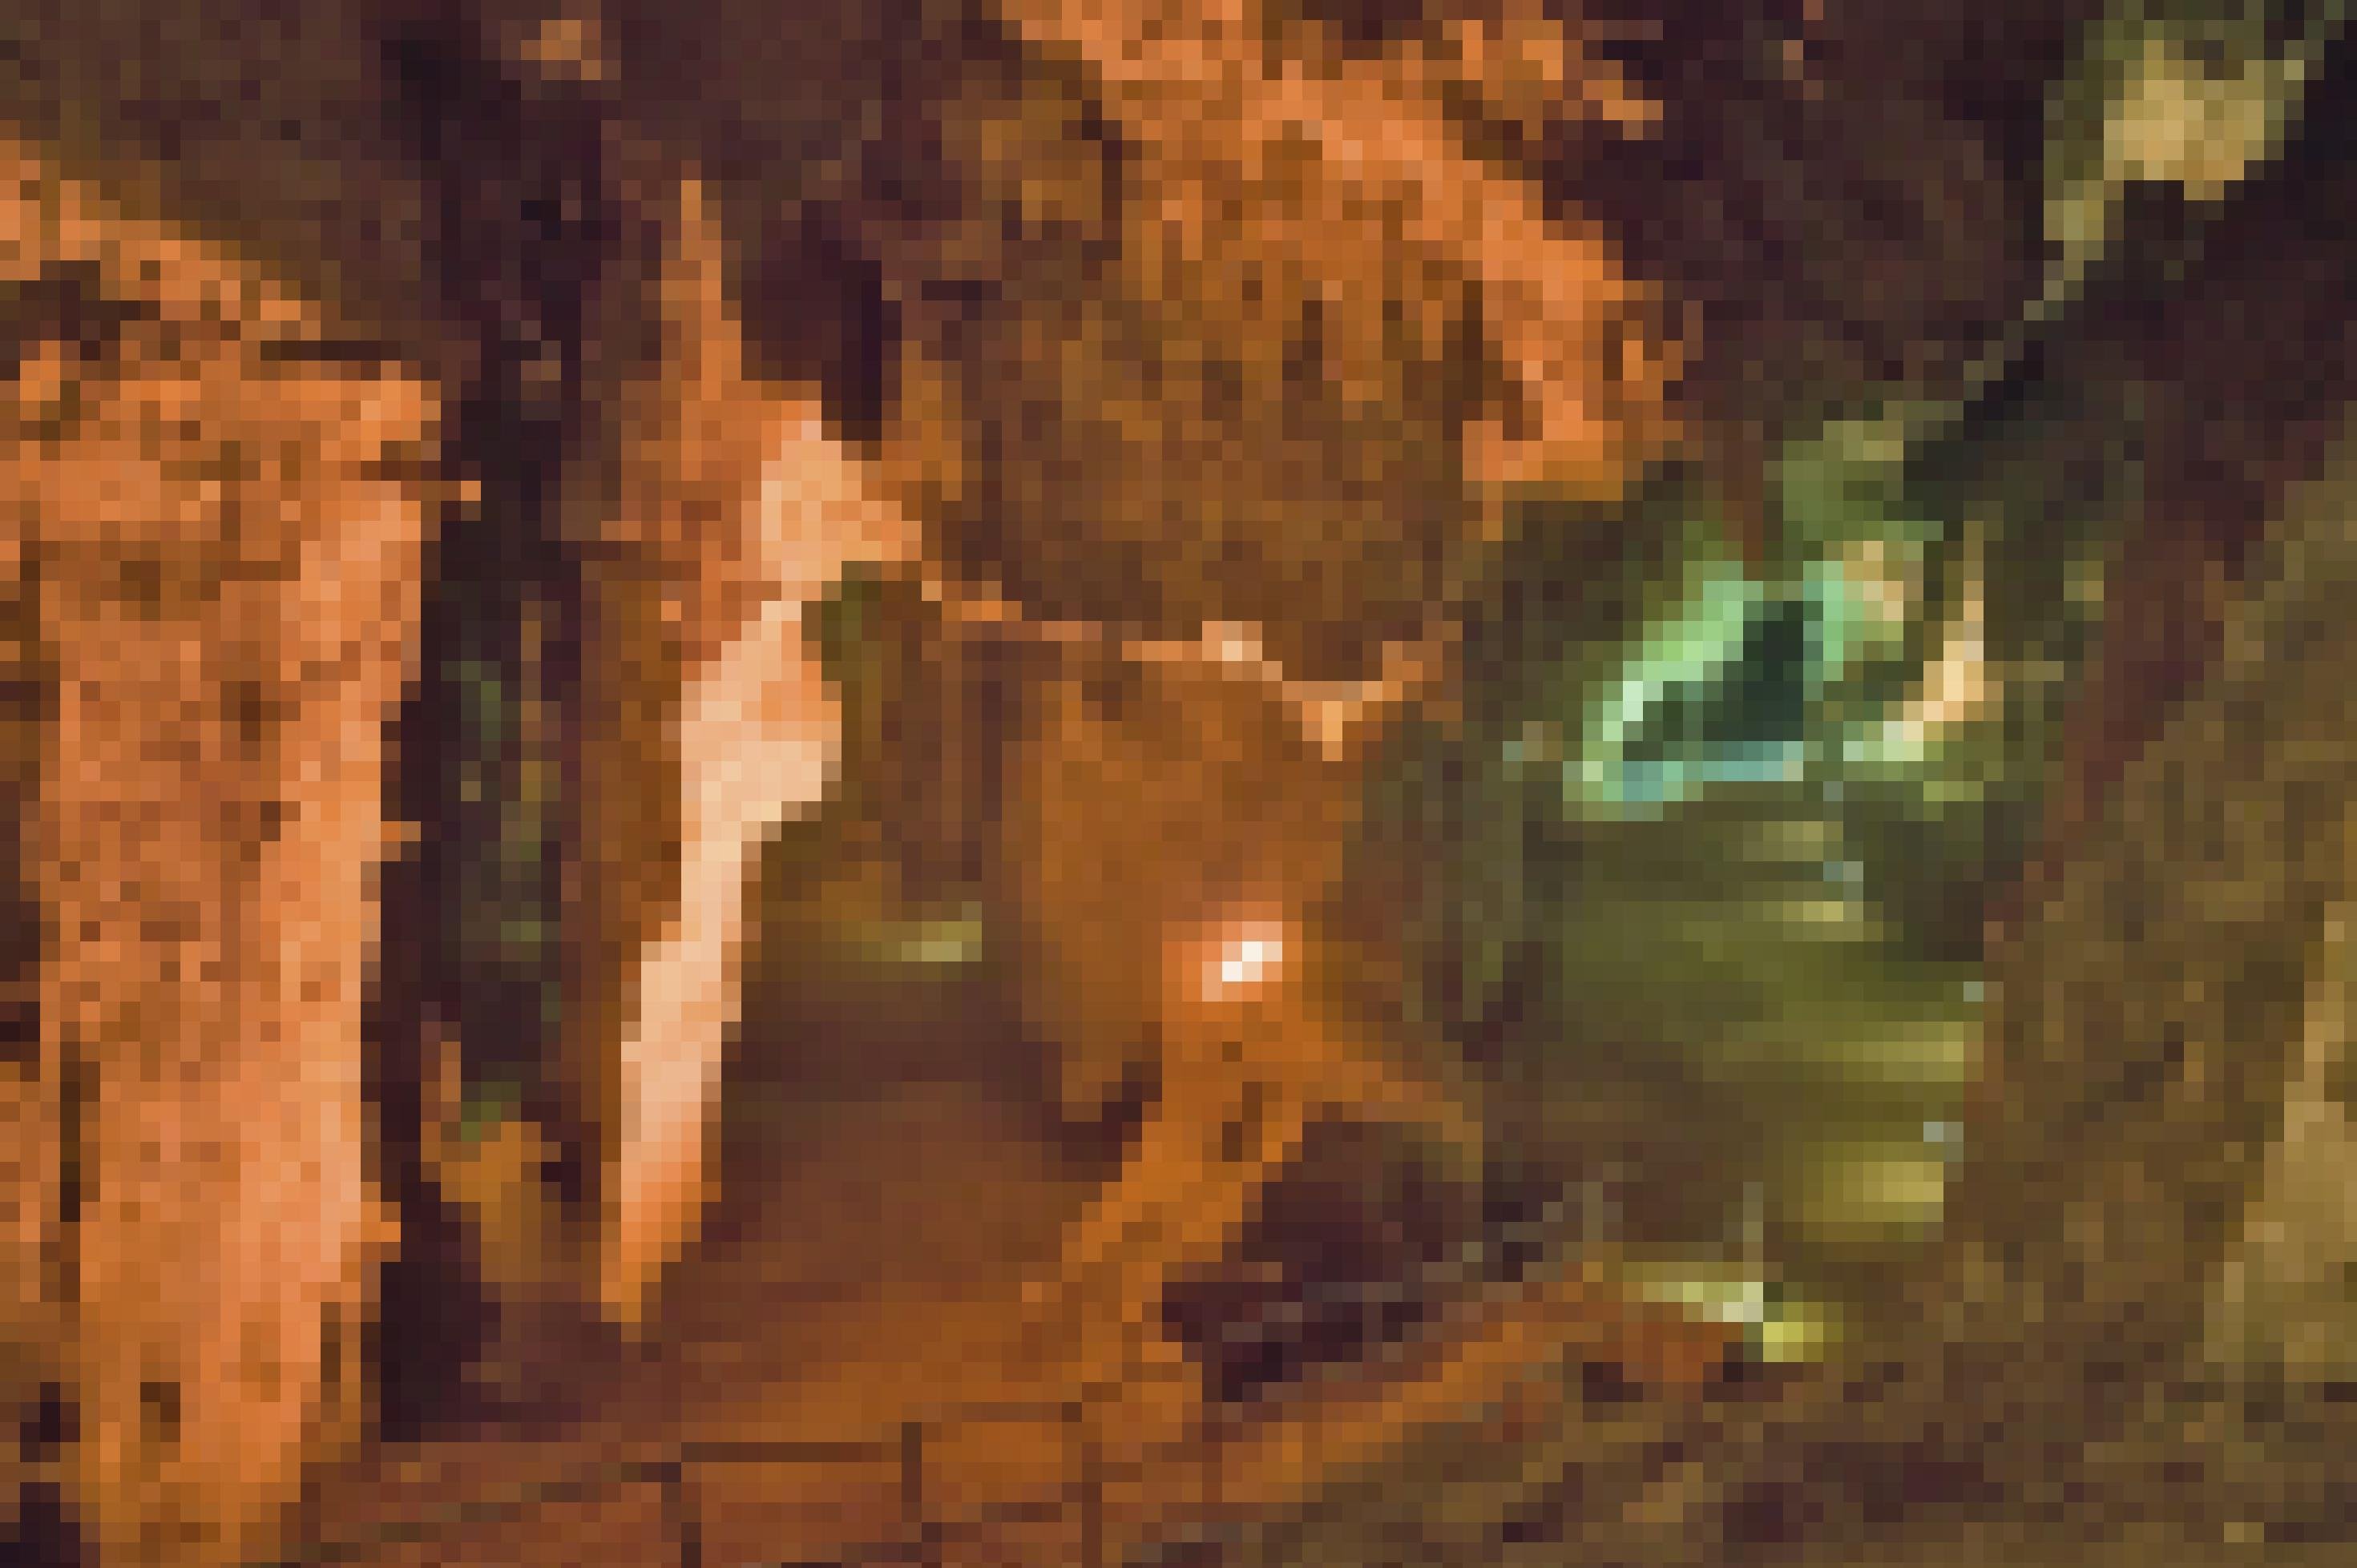 Zu sehen sind links rötlich, rechts grünlich ausgeleuchtete Höhlenwände und –gewölbe, die sich weiter hinten in zwei Gänge verzweigen. Im Vordergrund führt eine Treppe mit Geländer von oben links nach unten rechts in den rechten Gang.